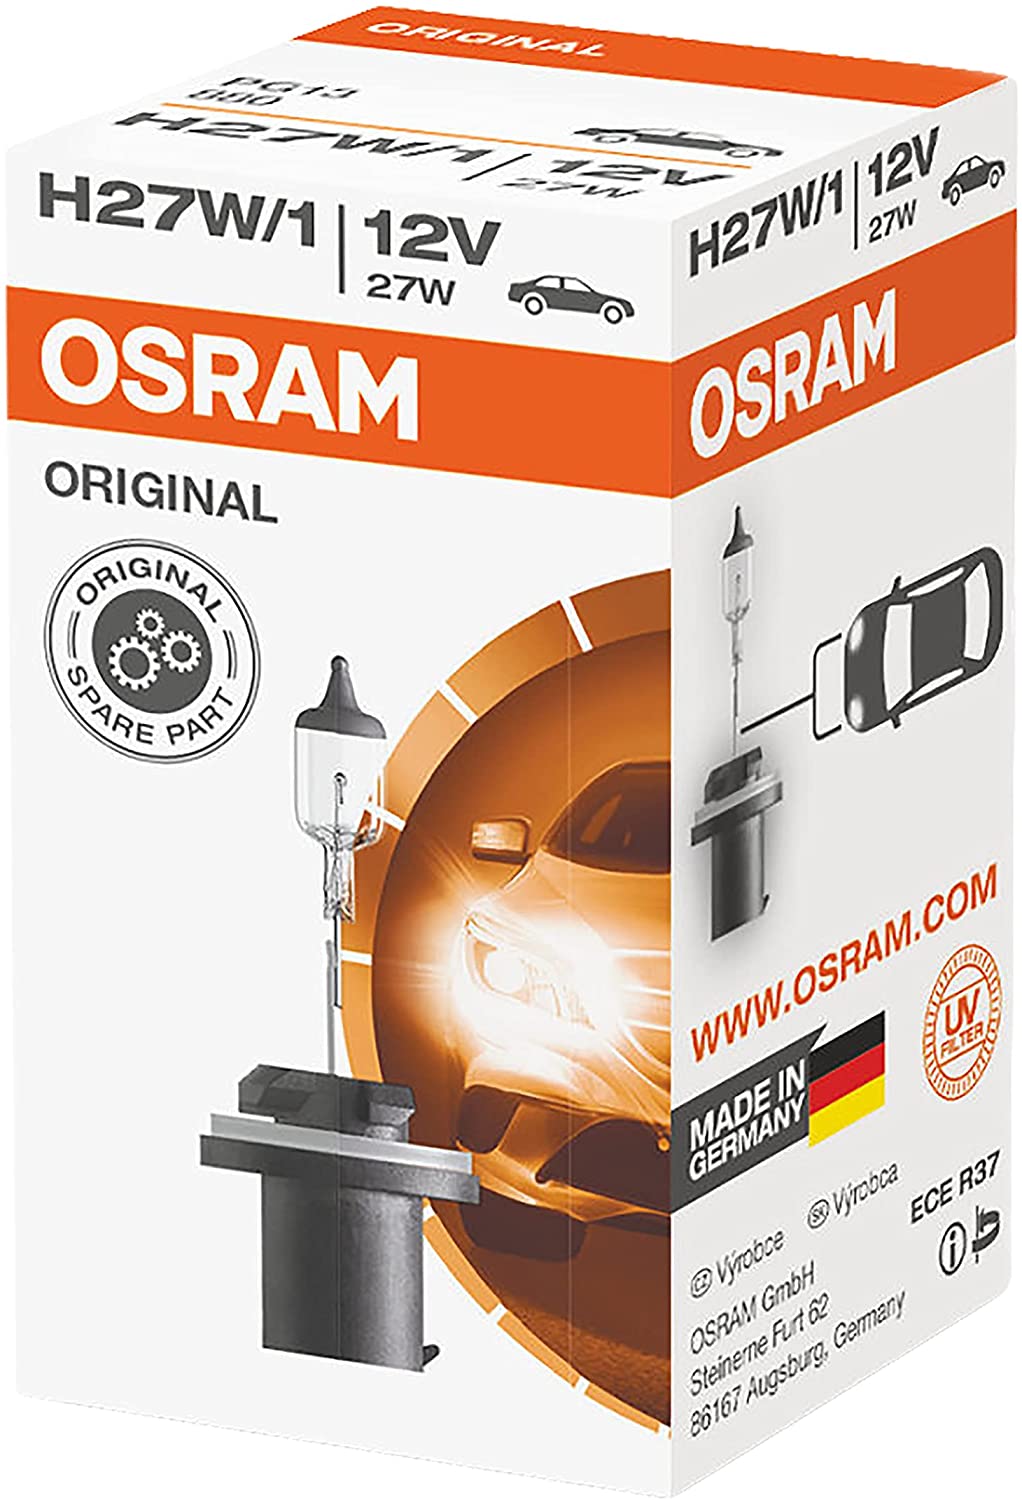 Osram 880 H27W/1 Autolampe 12V 27W PG13